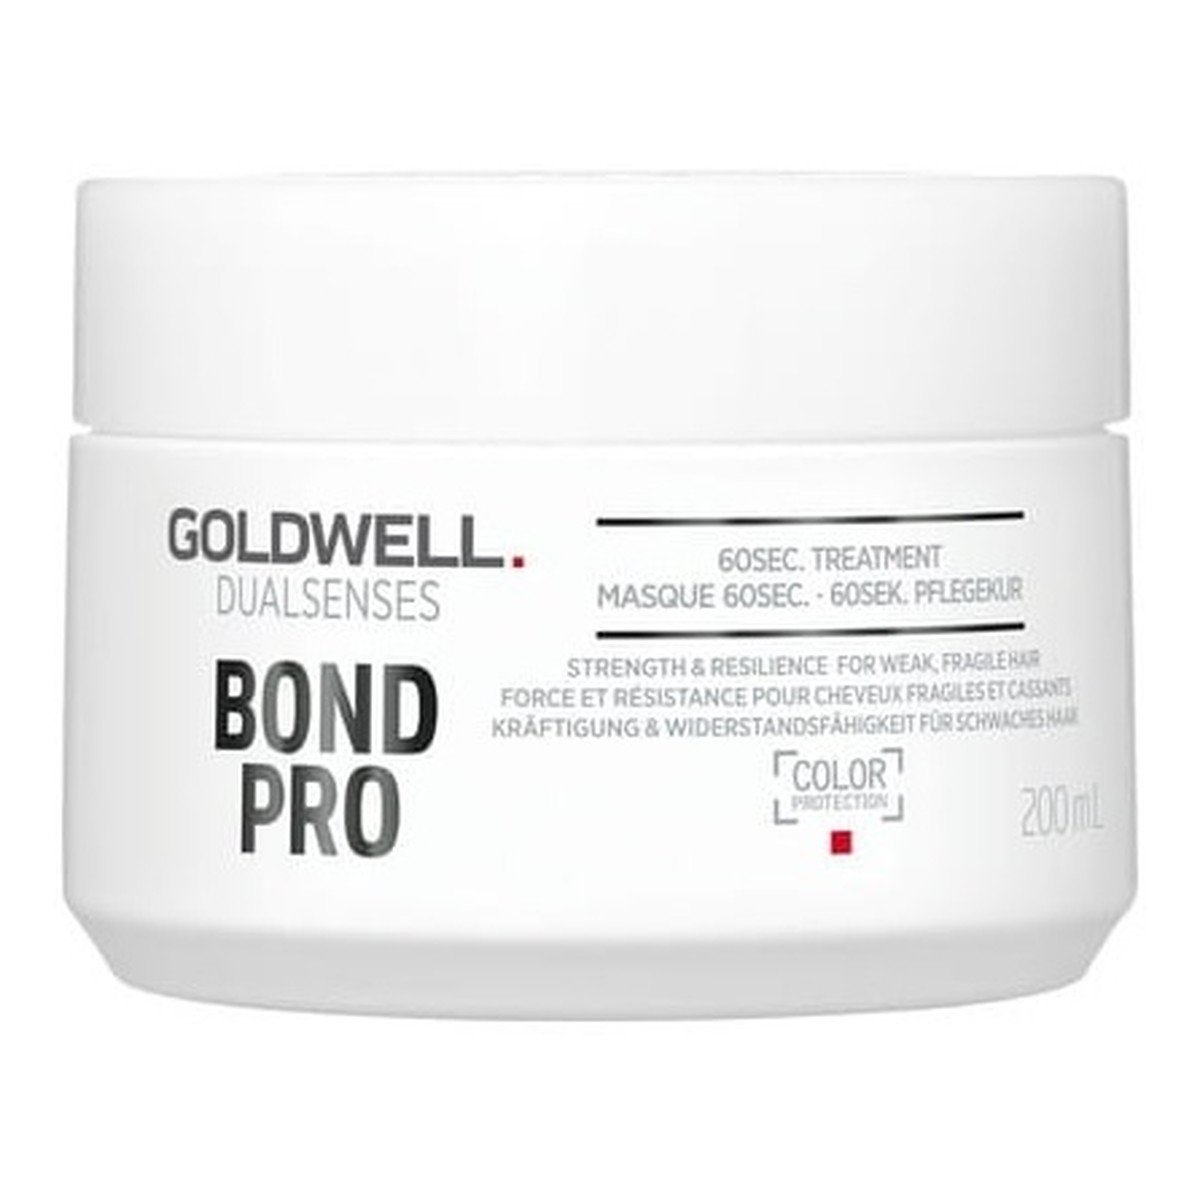 Goldwell Dualsenses bond pro 60sec treatment ekspresowa kuracja wzmacniająca do włosów 200ml